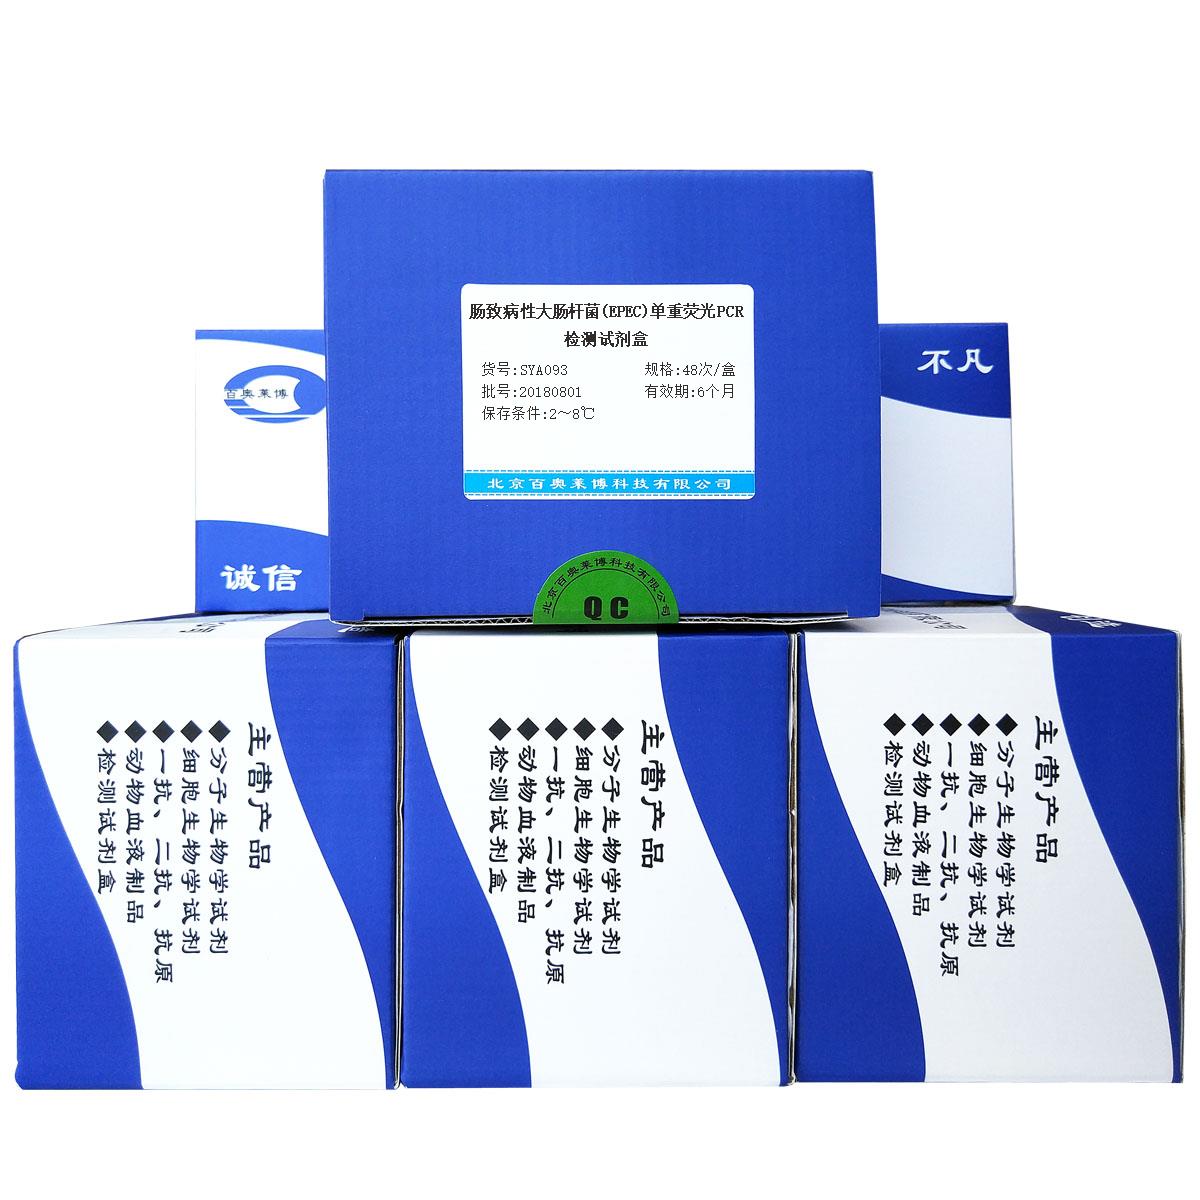 肠致病性大肠杆菌(EPEC)单重荧光PCR检测试剂盒